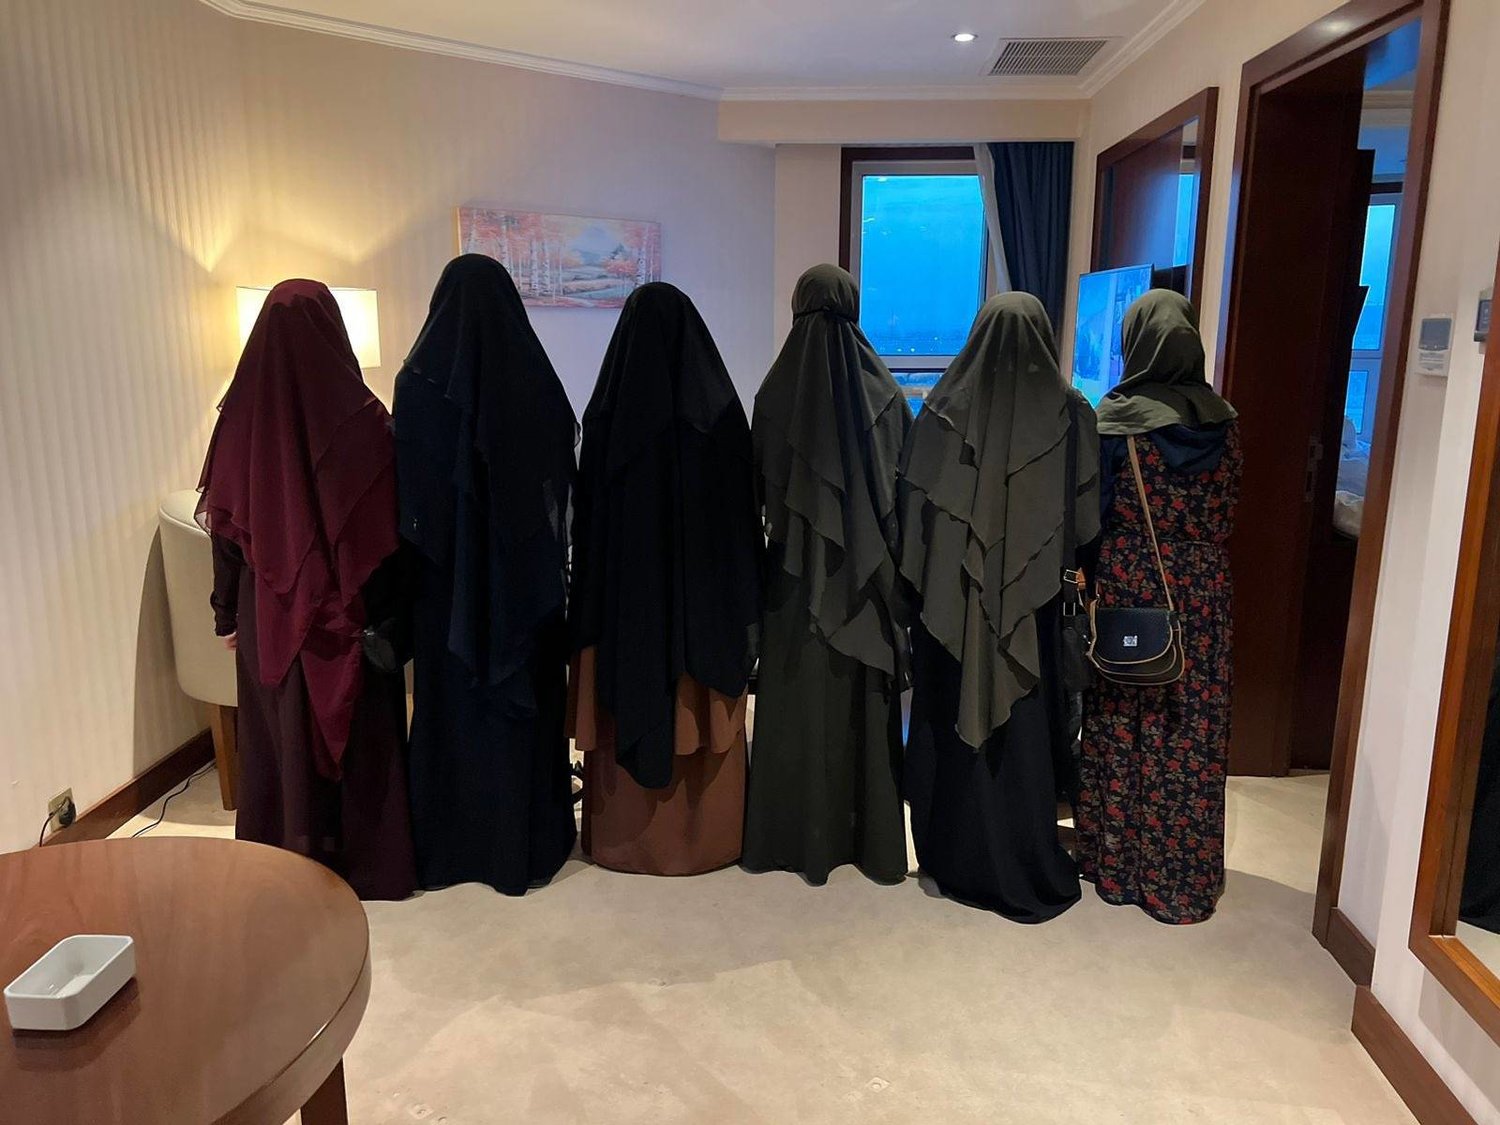 The six freed Yazidi women (Nadia Murad’s twitter account)
